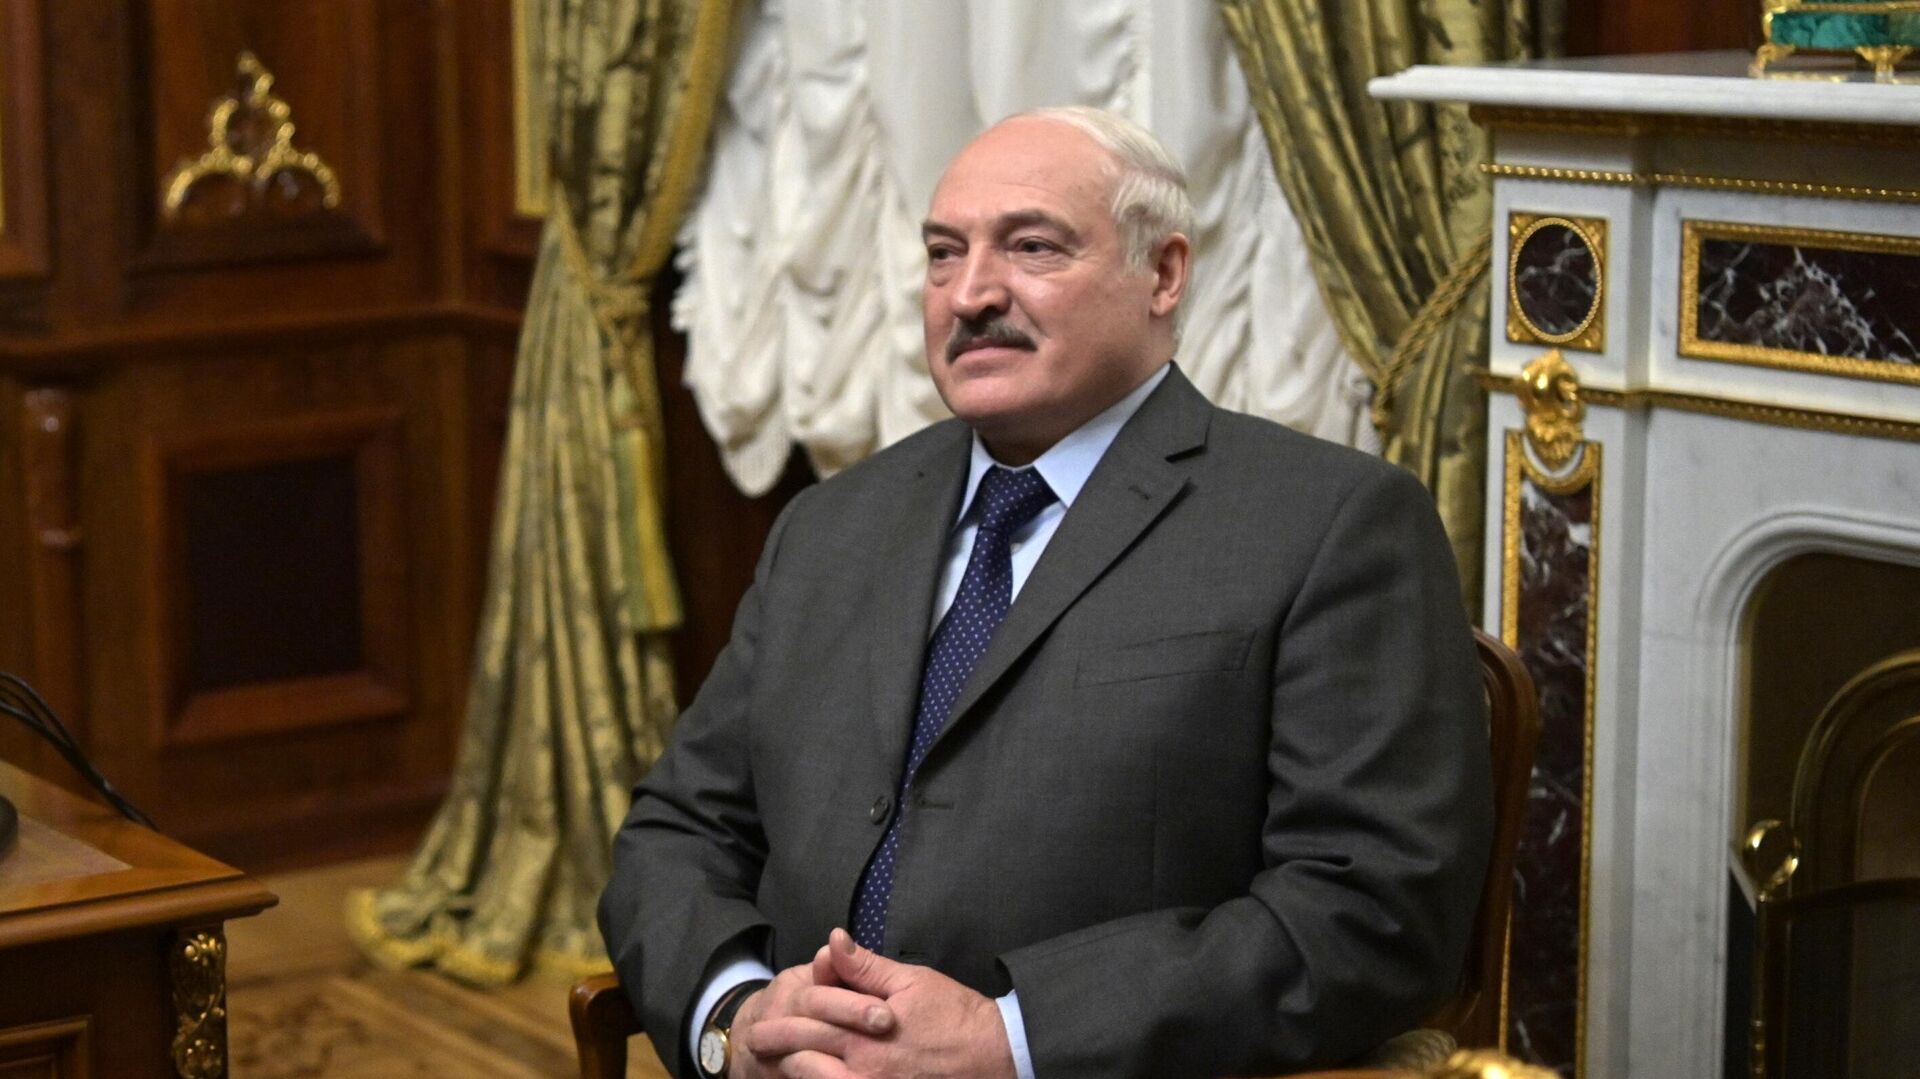 Председник Белорусије Александар Лукашенко у Санкт Петербургу - Sputnik Србија, 1920, 29.12.2021